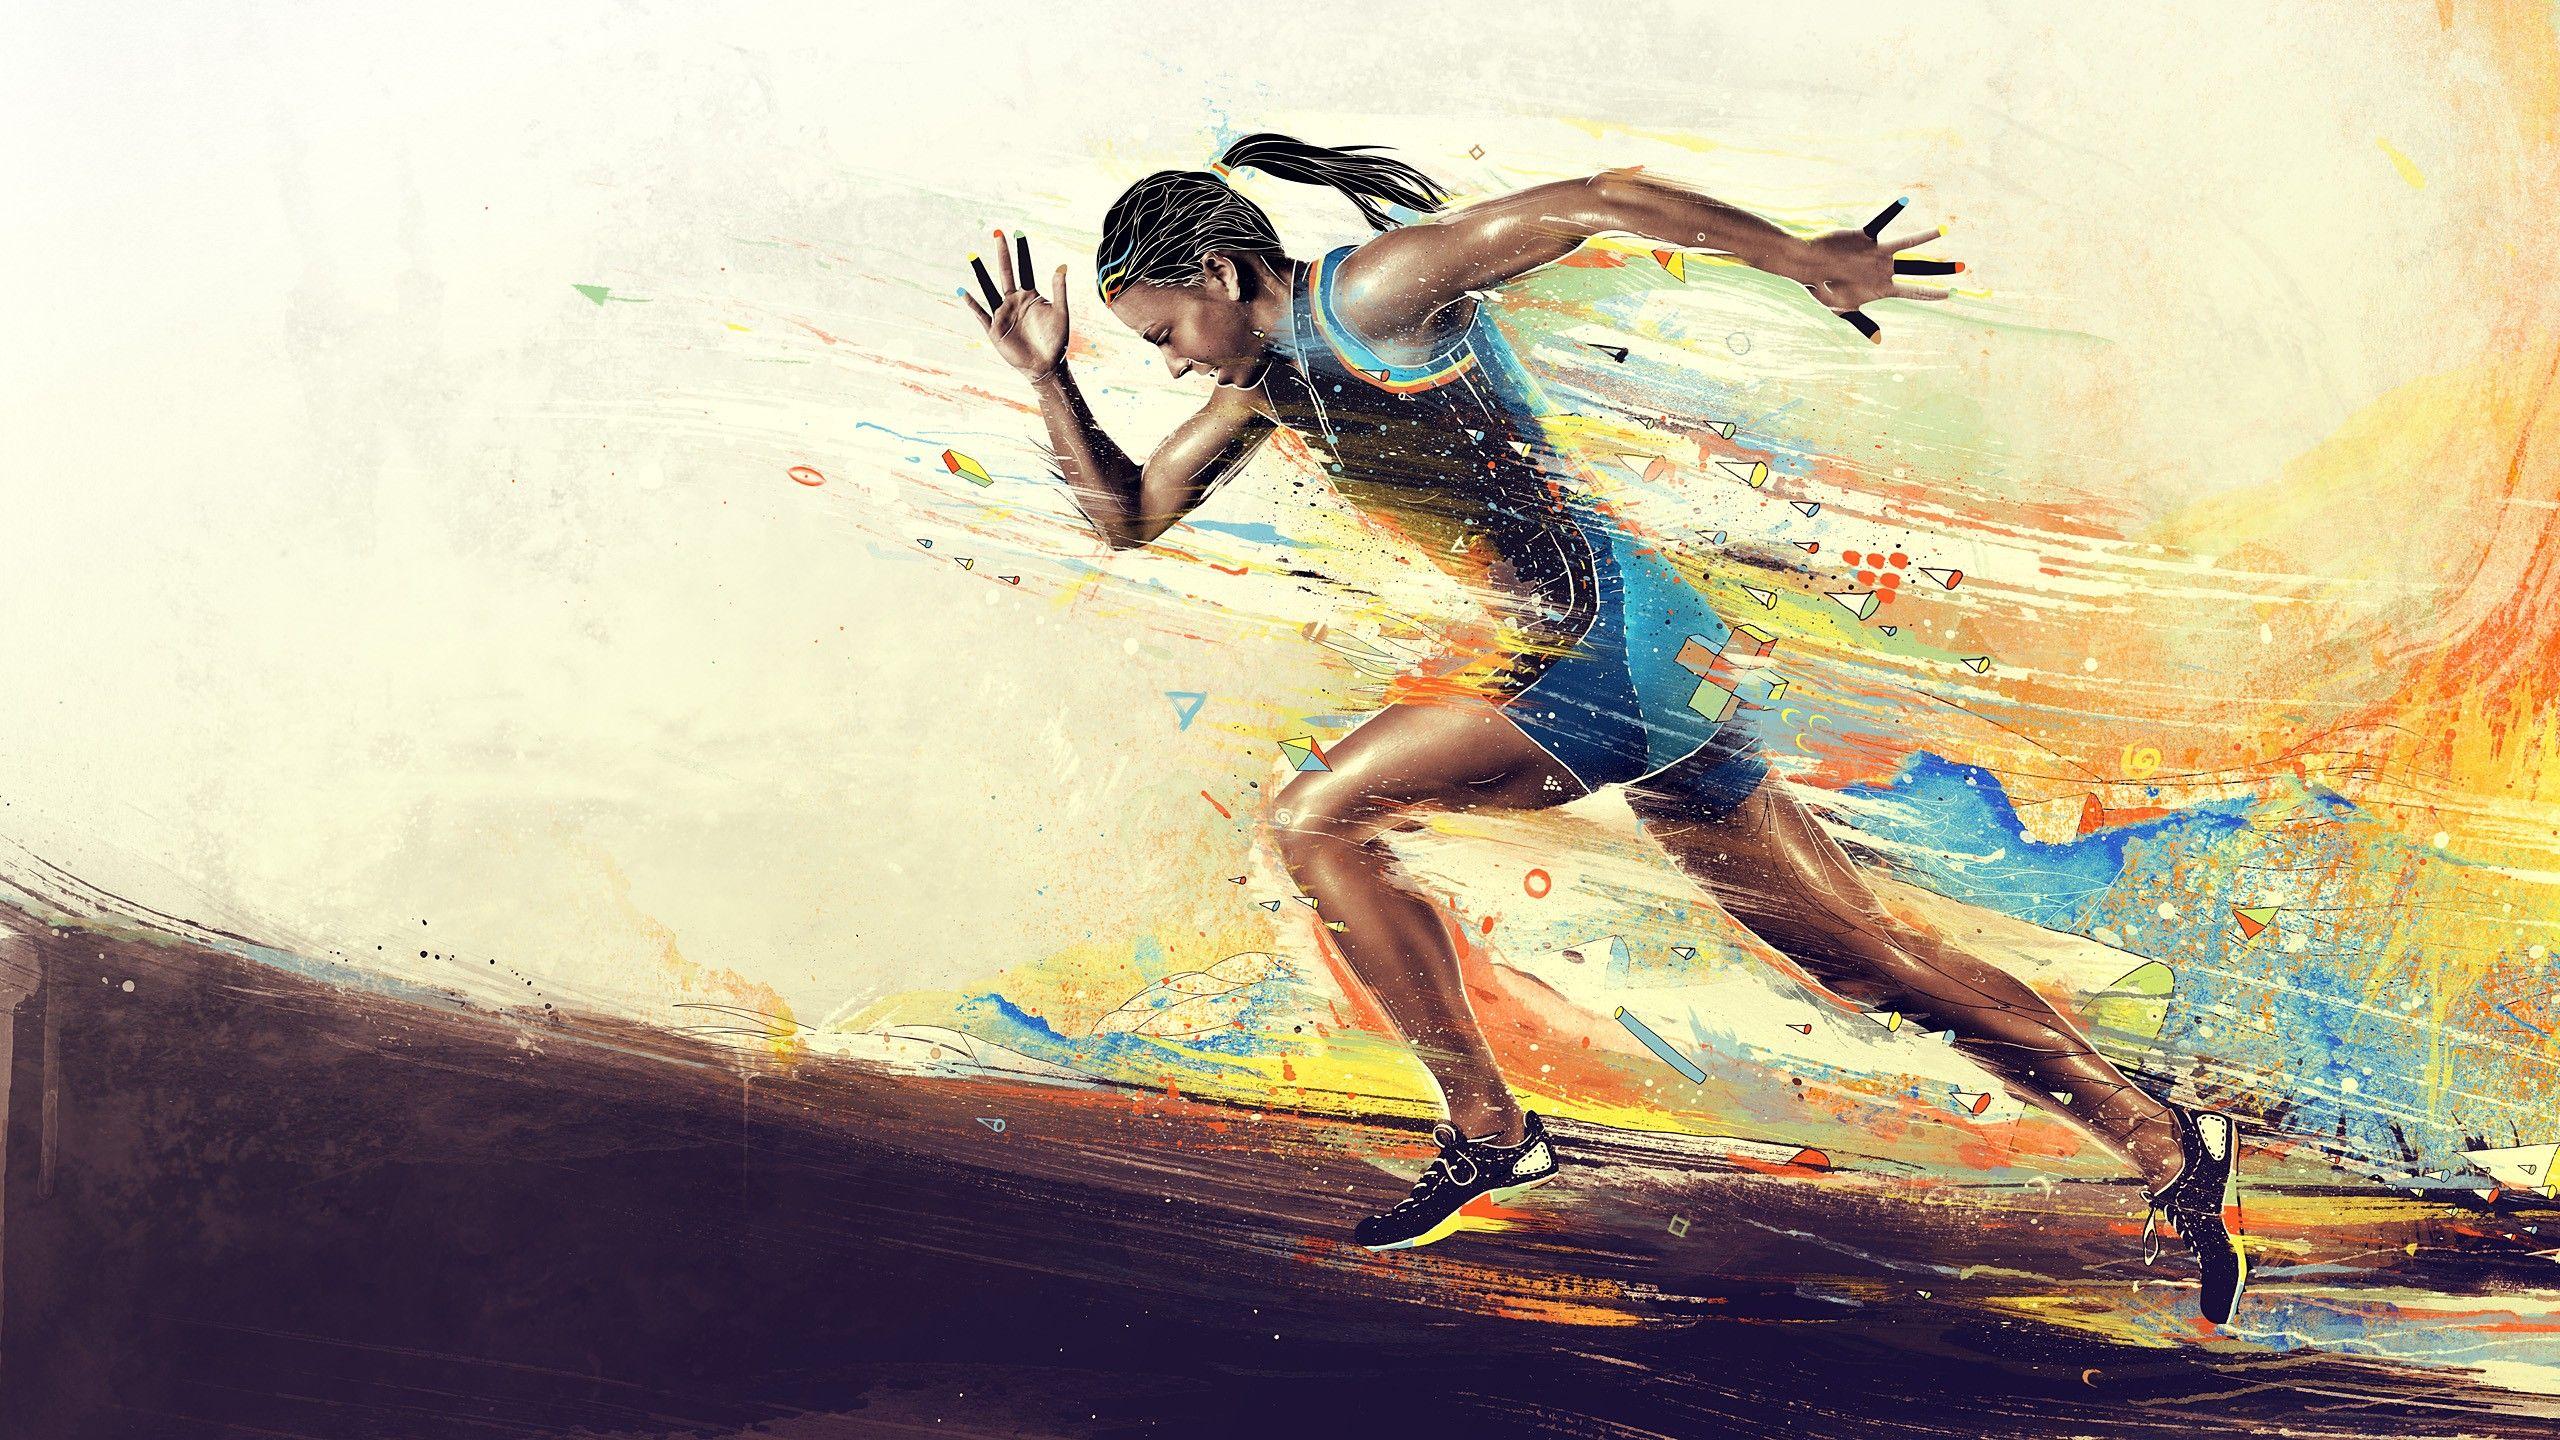 Running Wallpaper For Android. Running women, Running, Athlete